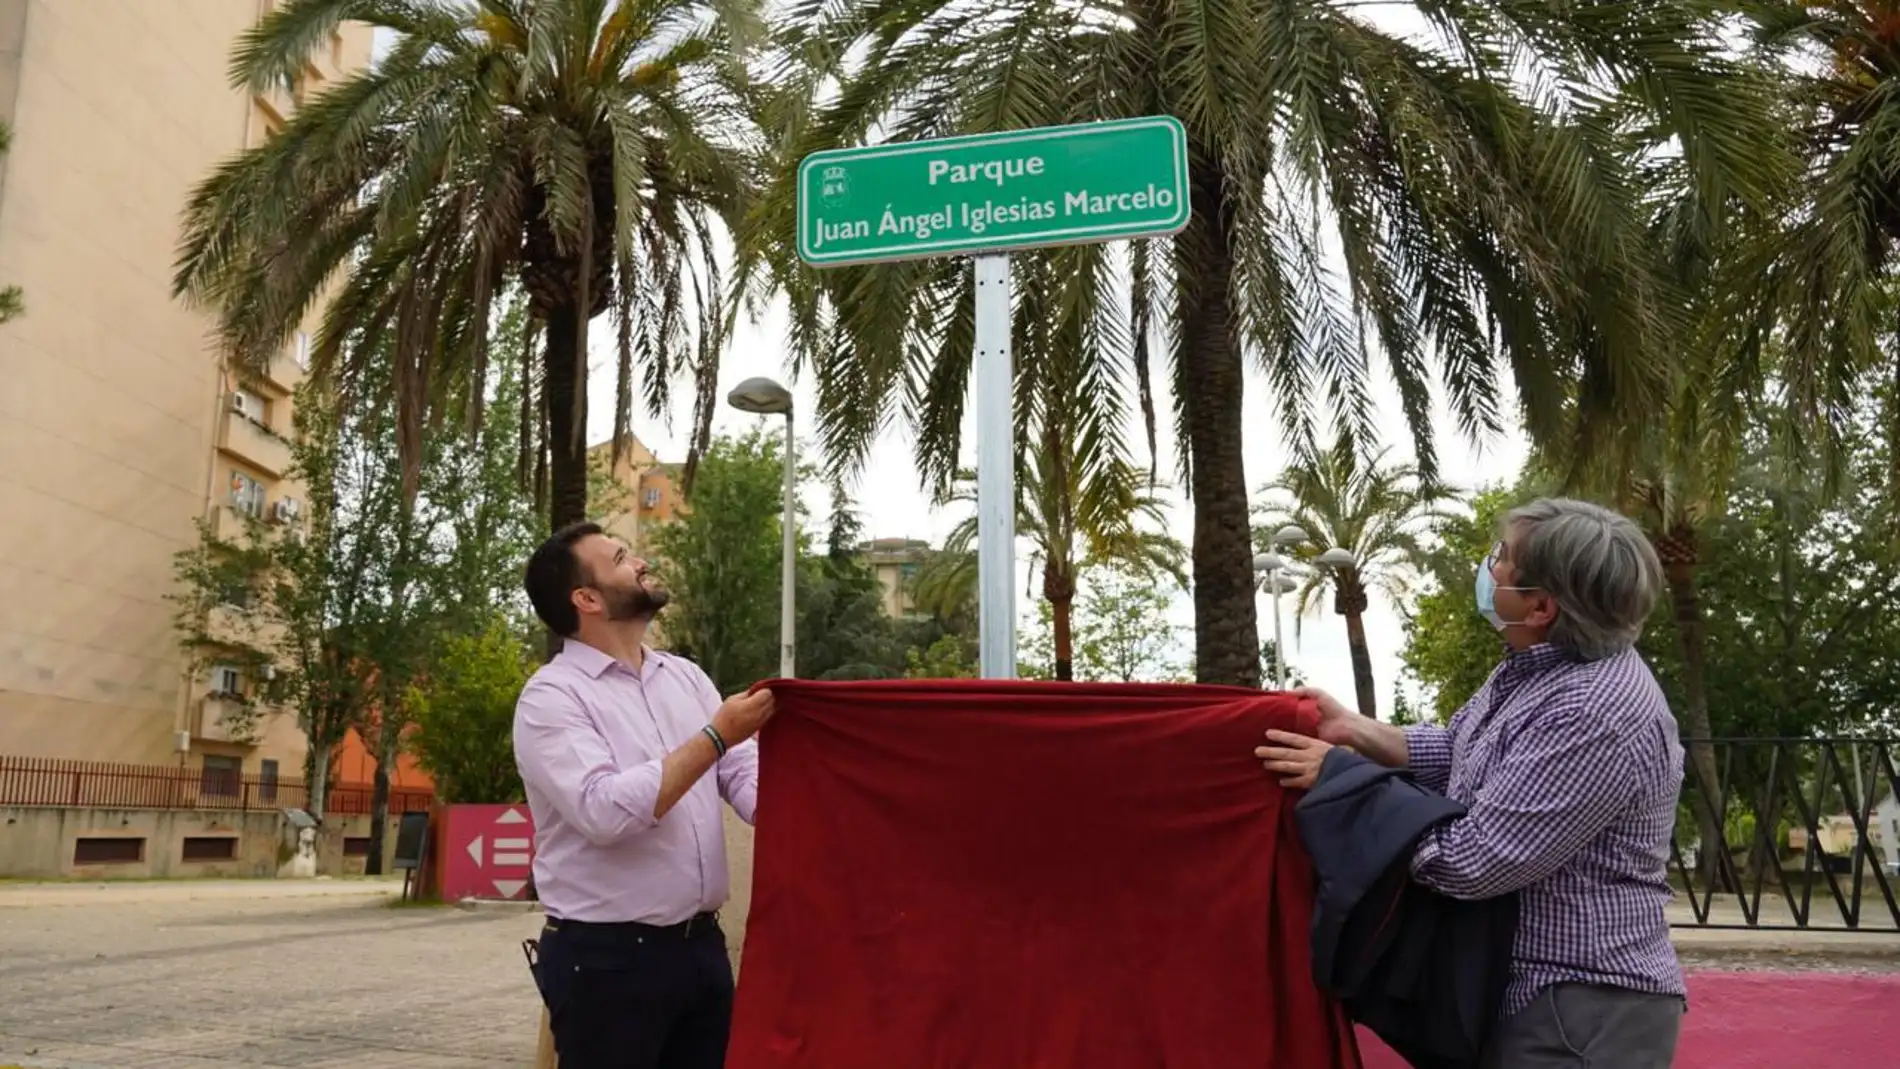 El alcalde Juan Iglesias Marcelo ya tiene su parque